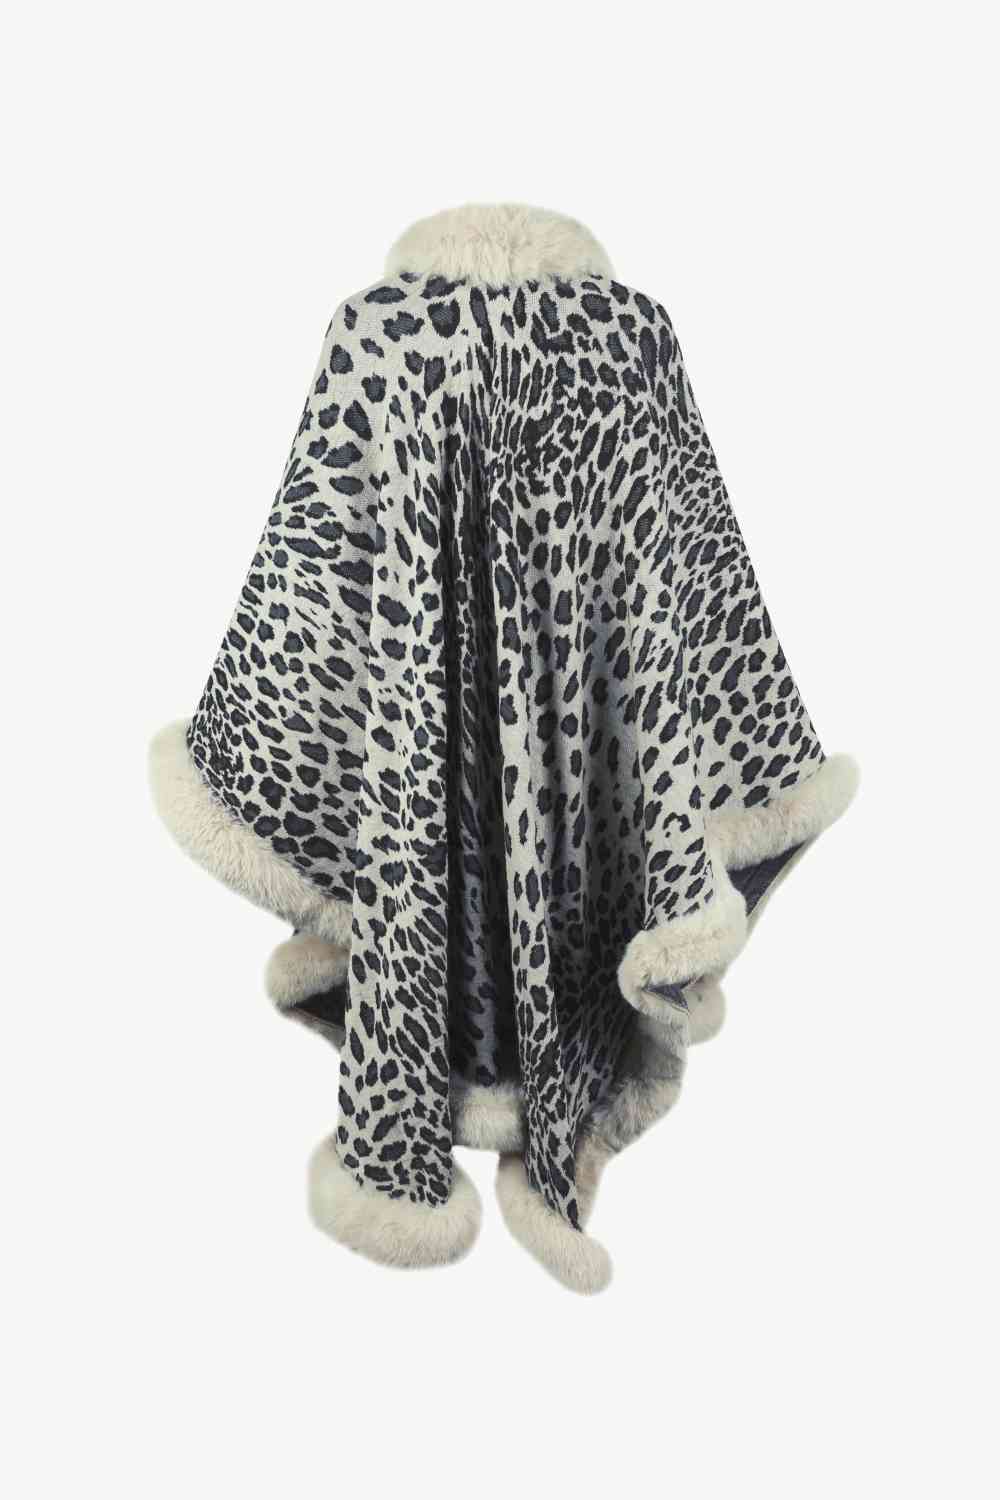 Large Leopard Plush Faux Fur Heavy Cardigan Oversized Sweater Poncho Jacket